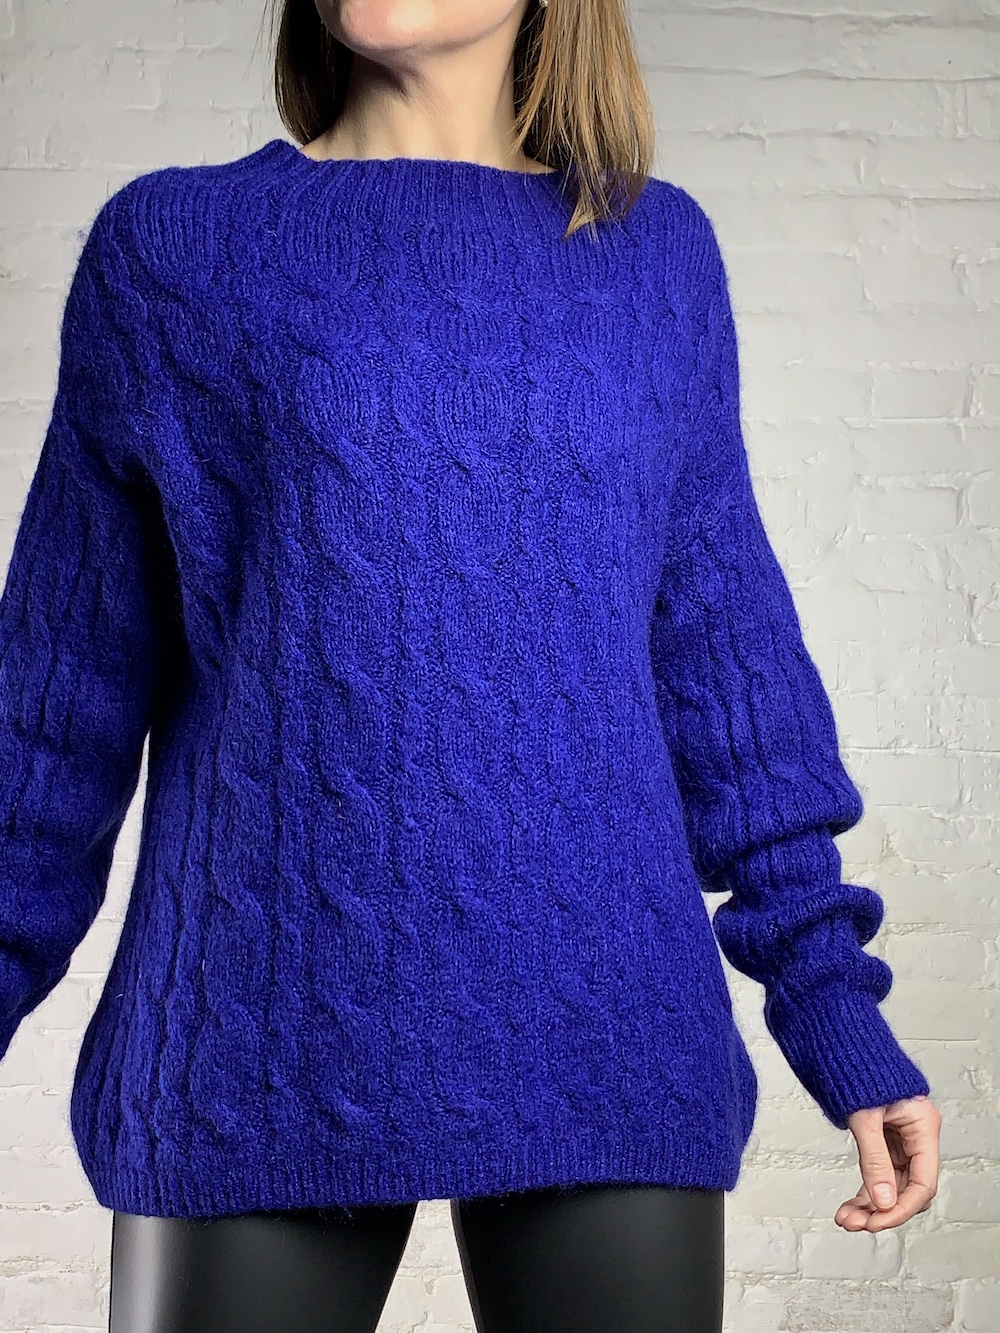 Теплый свитер цвета электрик, итальянского бренда No-Na